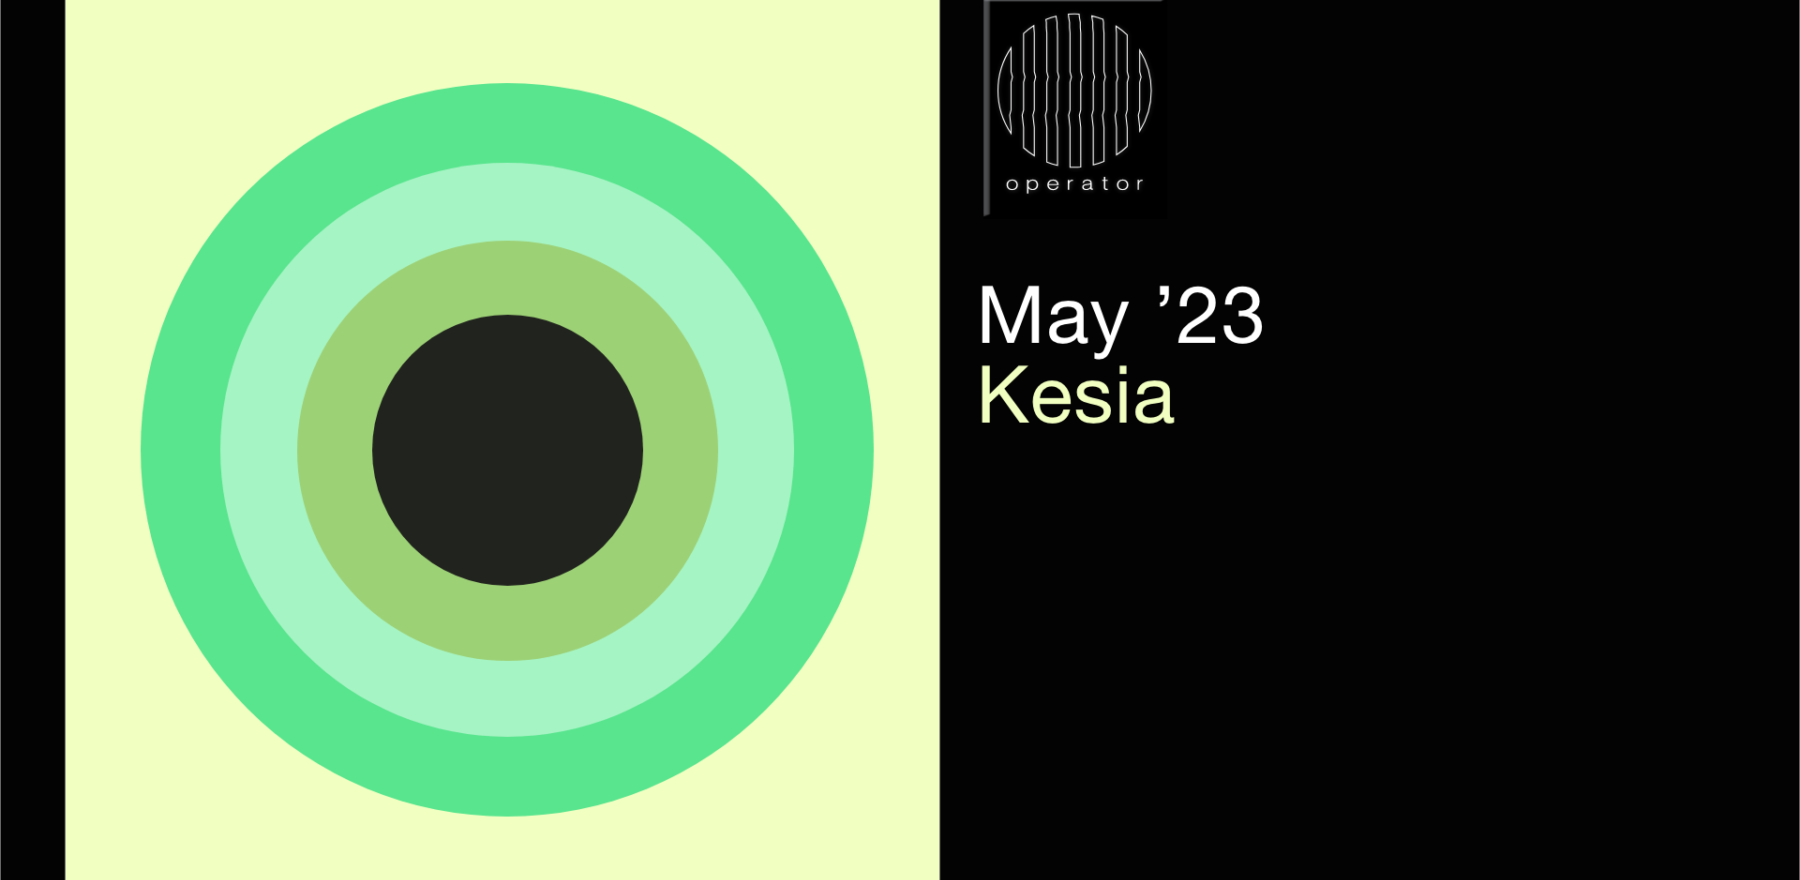 Playlist mei '23 - Operator invites Kesia